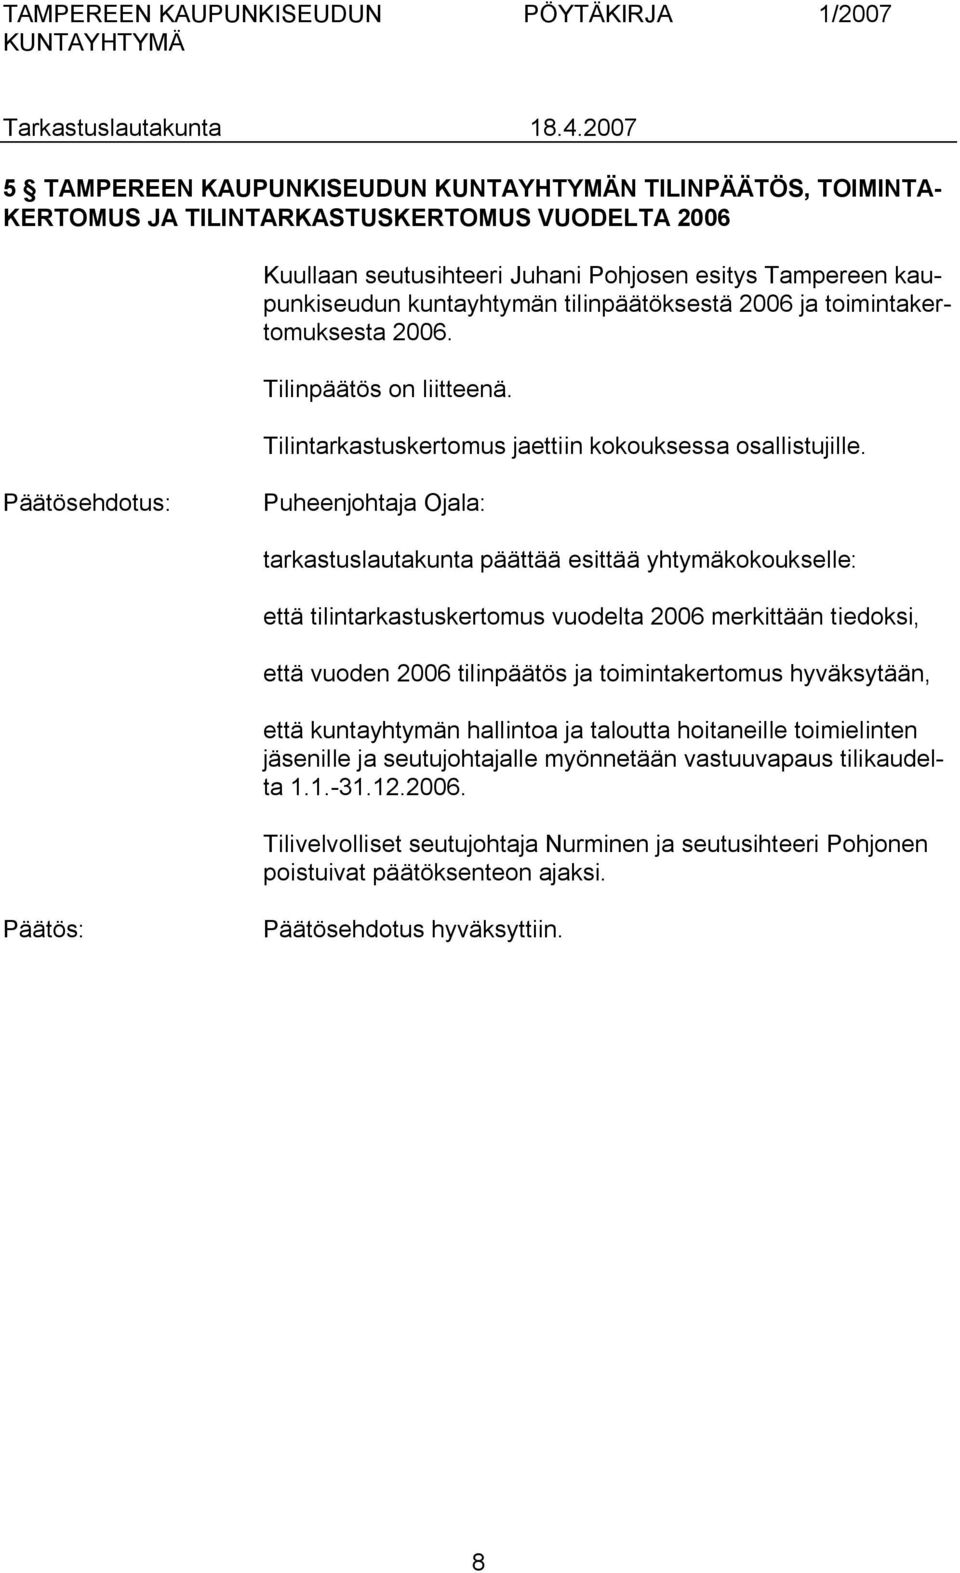 Puheenjohtaja Ojala: tarkastuslautakunta päättää esittää yhtymäkokoukselle: että tilintarkastuskertomus vuodelta 2006 merkittään tiedoksi, että vuoden 2006 tilinpäätös ja toimintakertomus